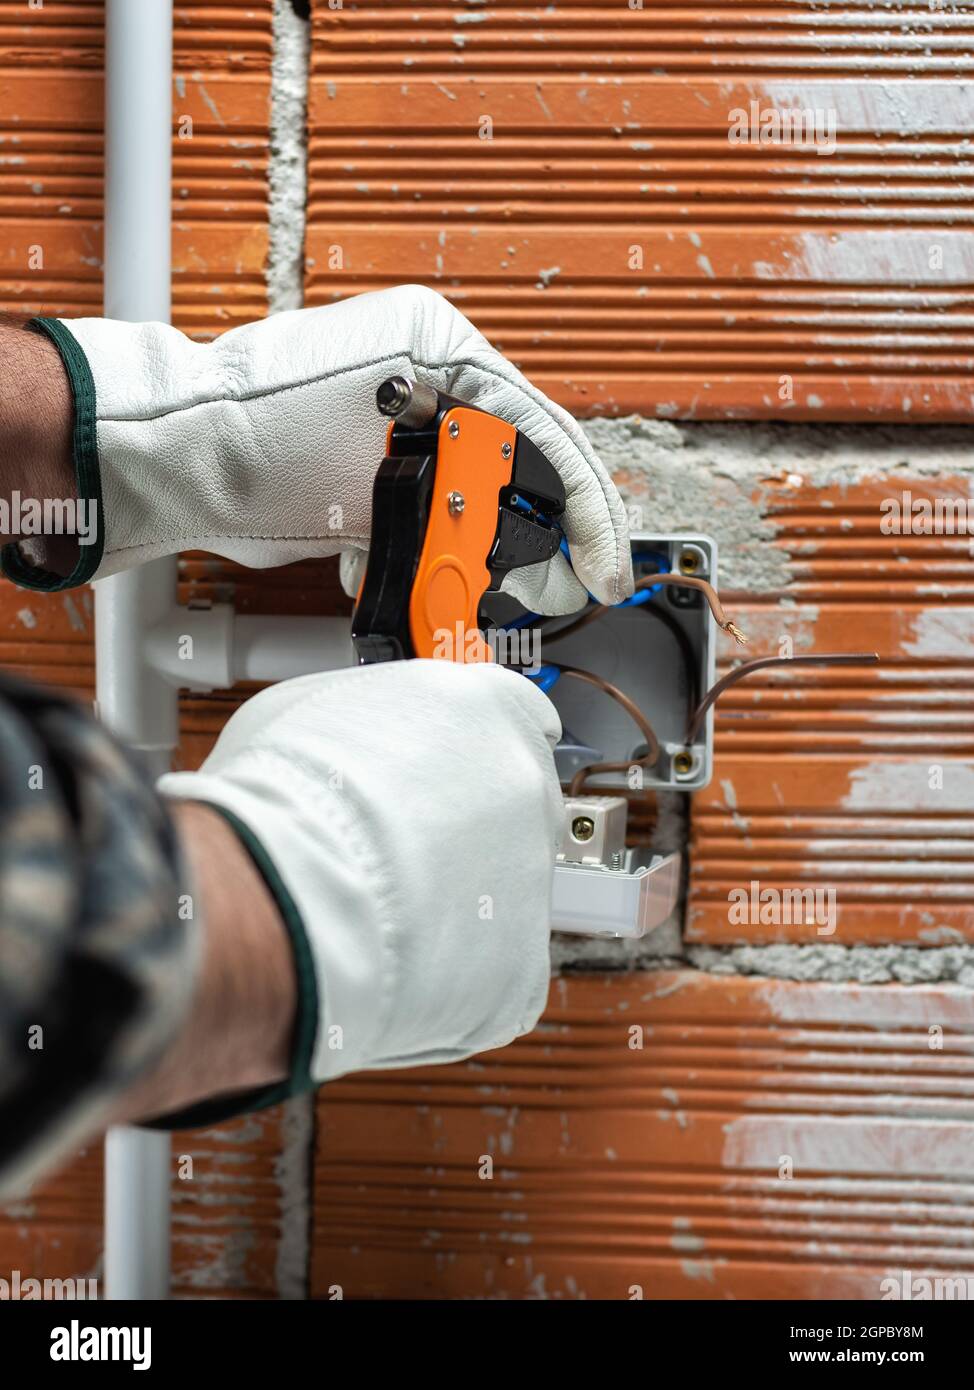 Elektriker Arbeiter bei der Arbeit mit Abisolierer bereitet die elektrischen Kabel der häuslichen elektrischen Anlage. Sicheres Arbeiten mit Schutzhandschuhen. Co Stockfoto